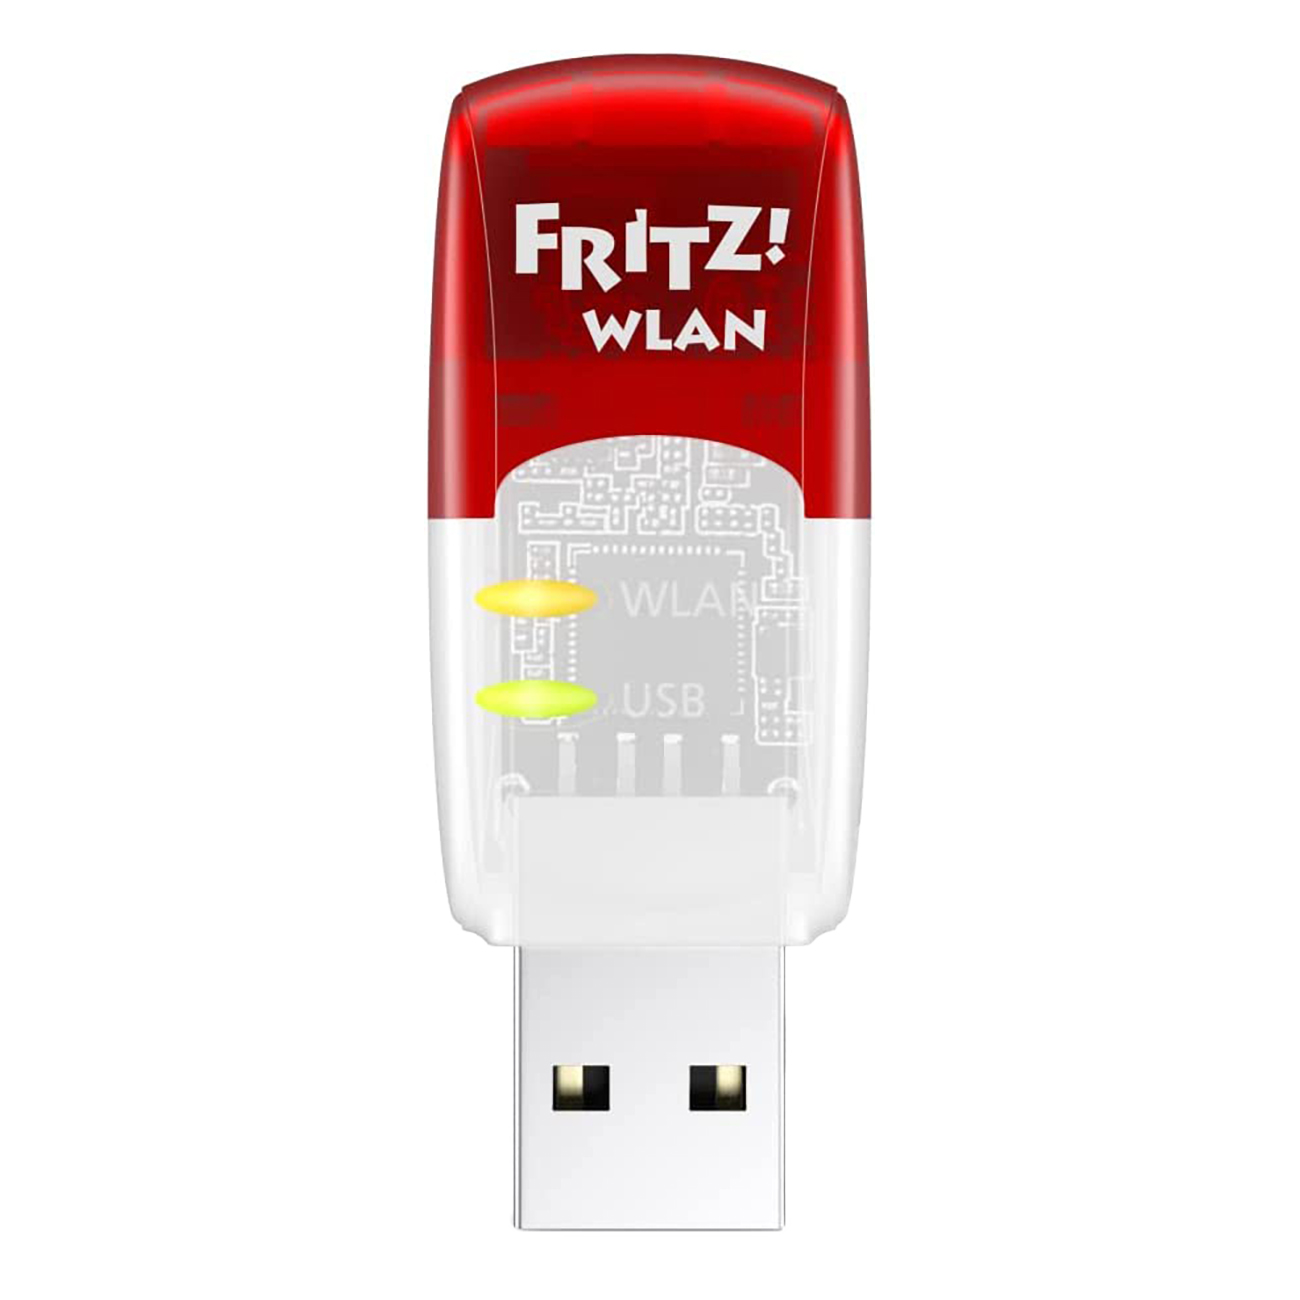 FRITZ!WLAN USB Stick AC 430 MU-MIMO | Netzwerkadapter | Intelligentes High-End-WLAN | Kompatibel zu allen WLAN-Routern | Einfache Installation binnen Sekunden von AVM